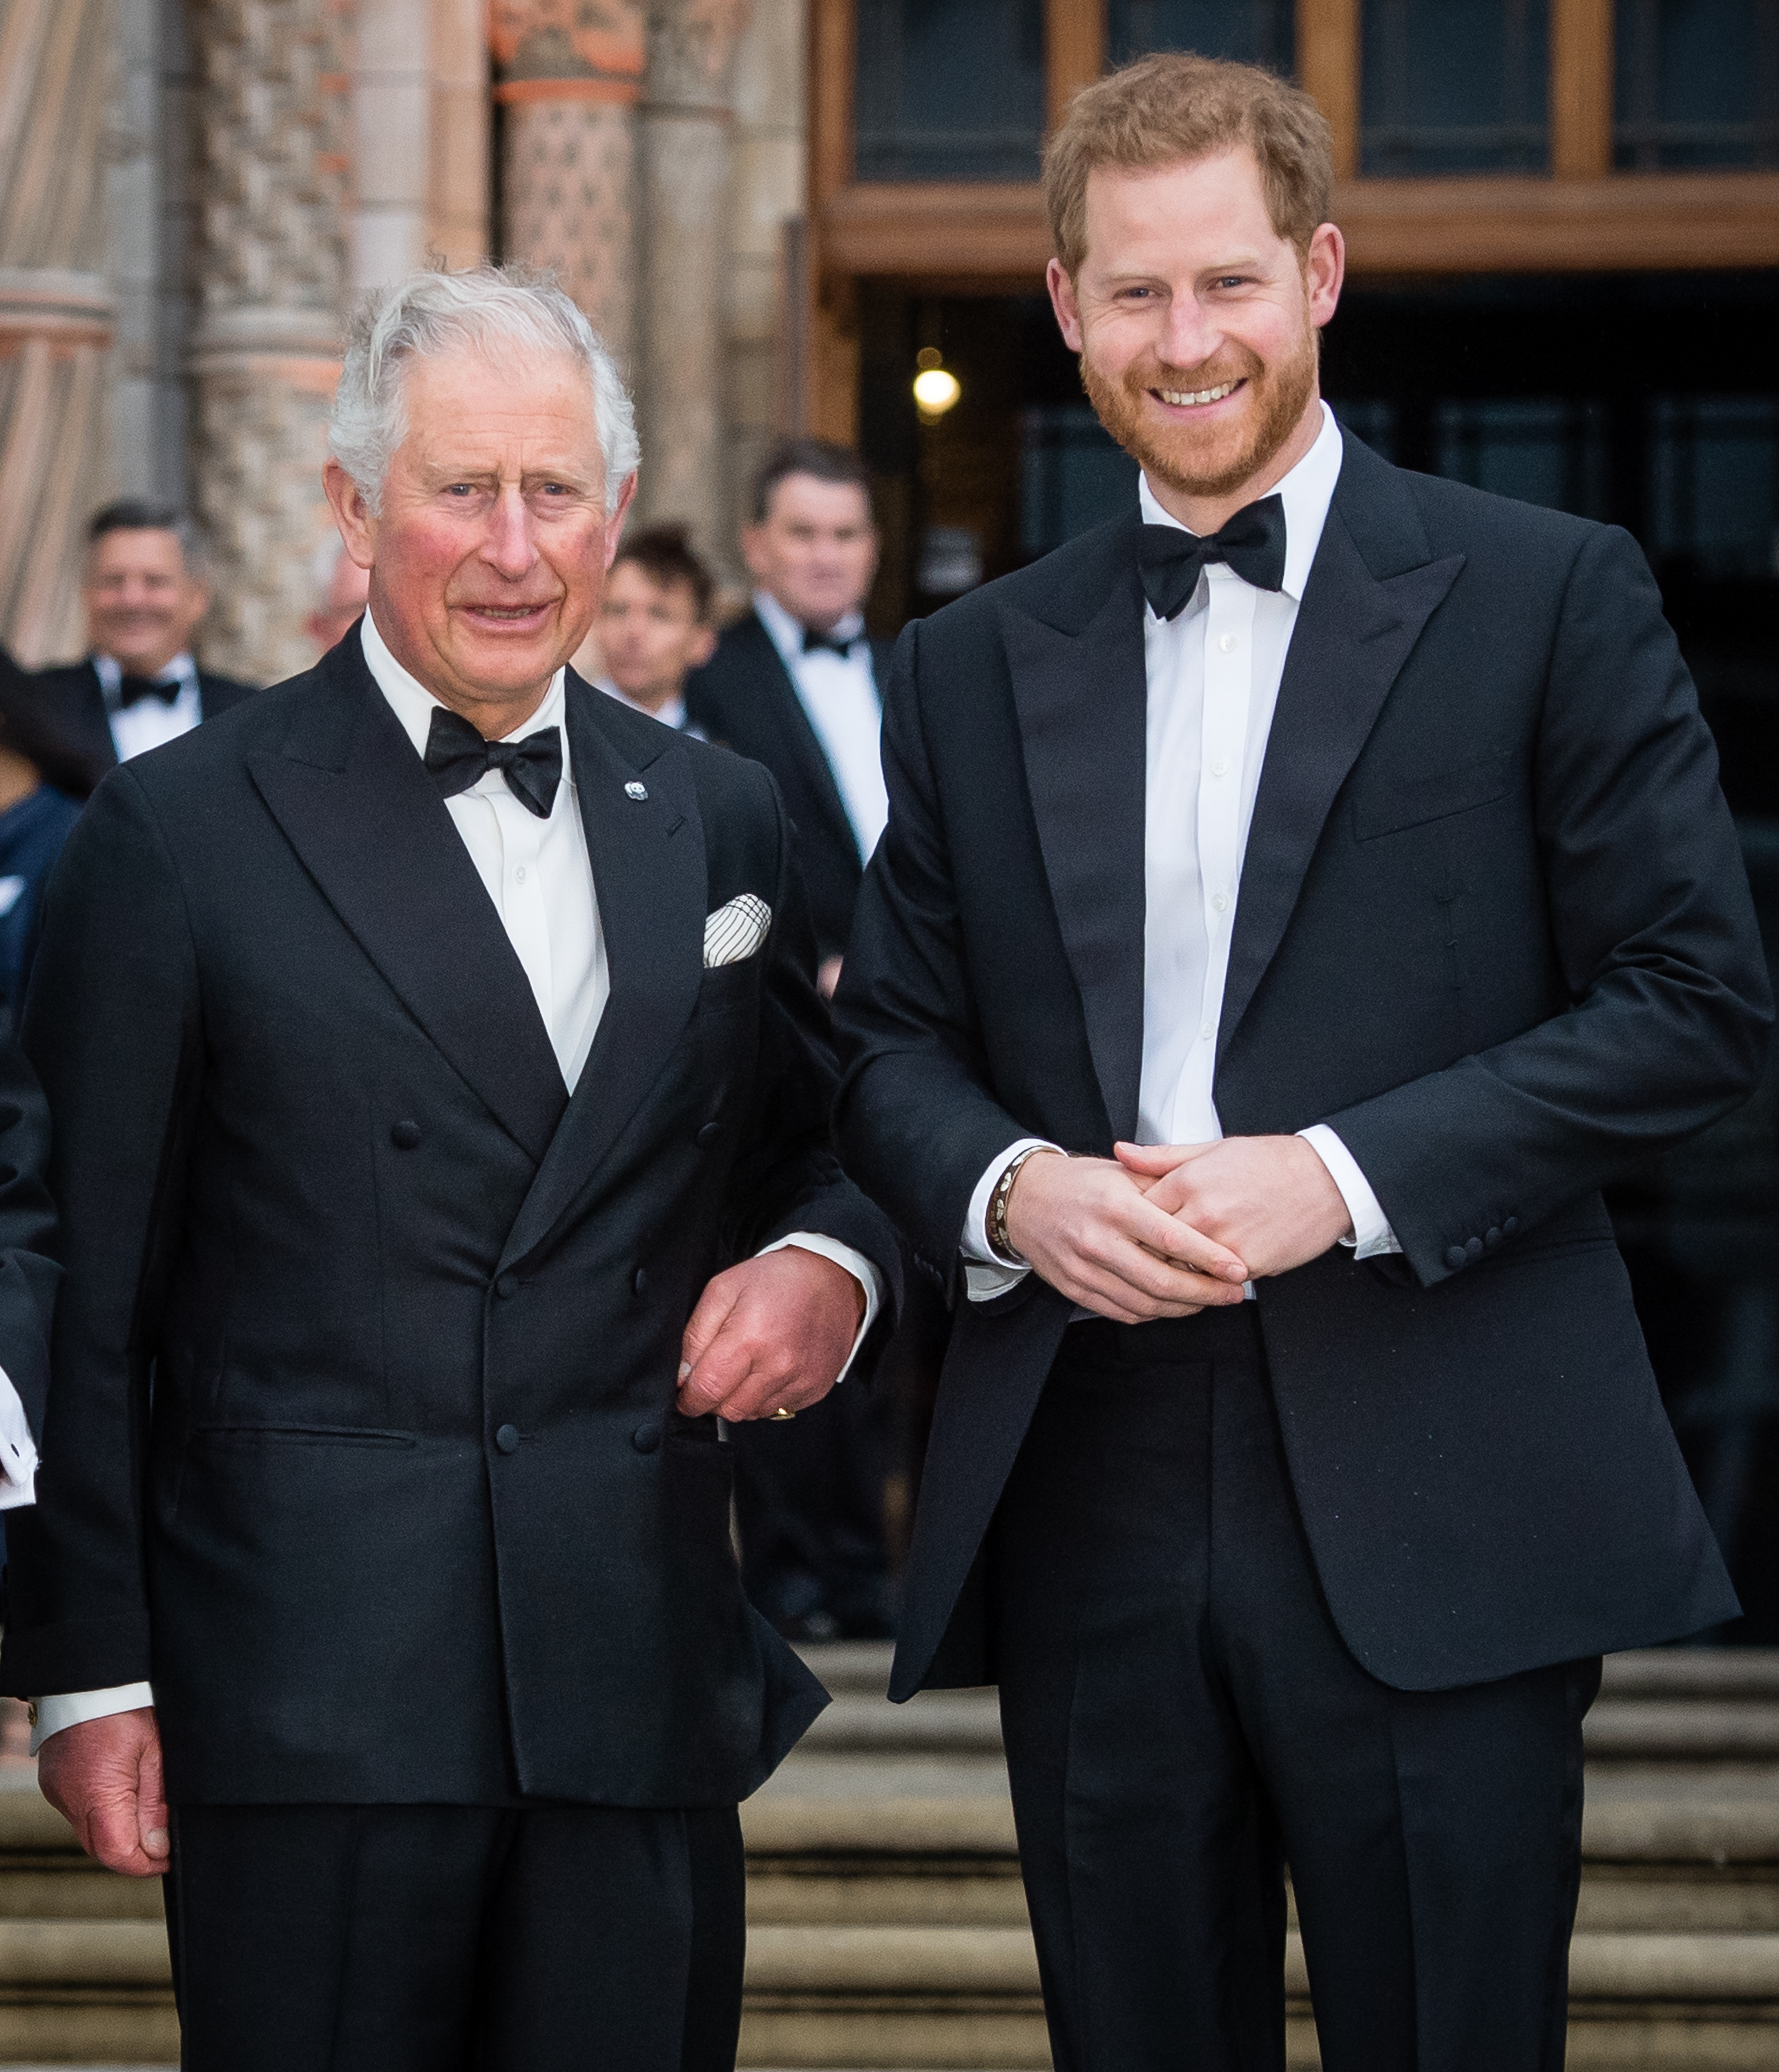 Le roi Charles et le prince Harry assistent à la première mondiale de "Notre planète" au Musée d'histoire naturelle le 4 avril 2019 à Londres, en Angleterre. | Source : Getty Images